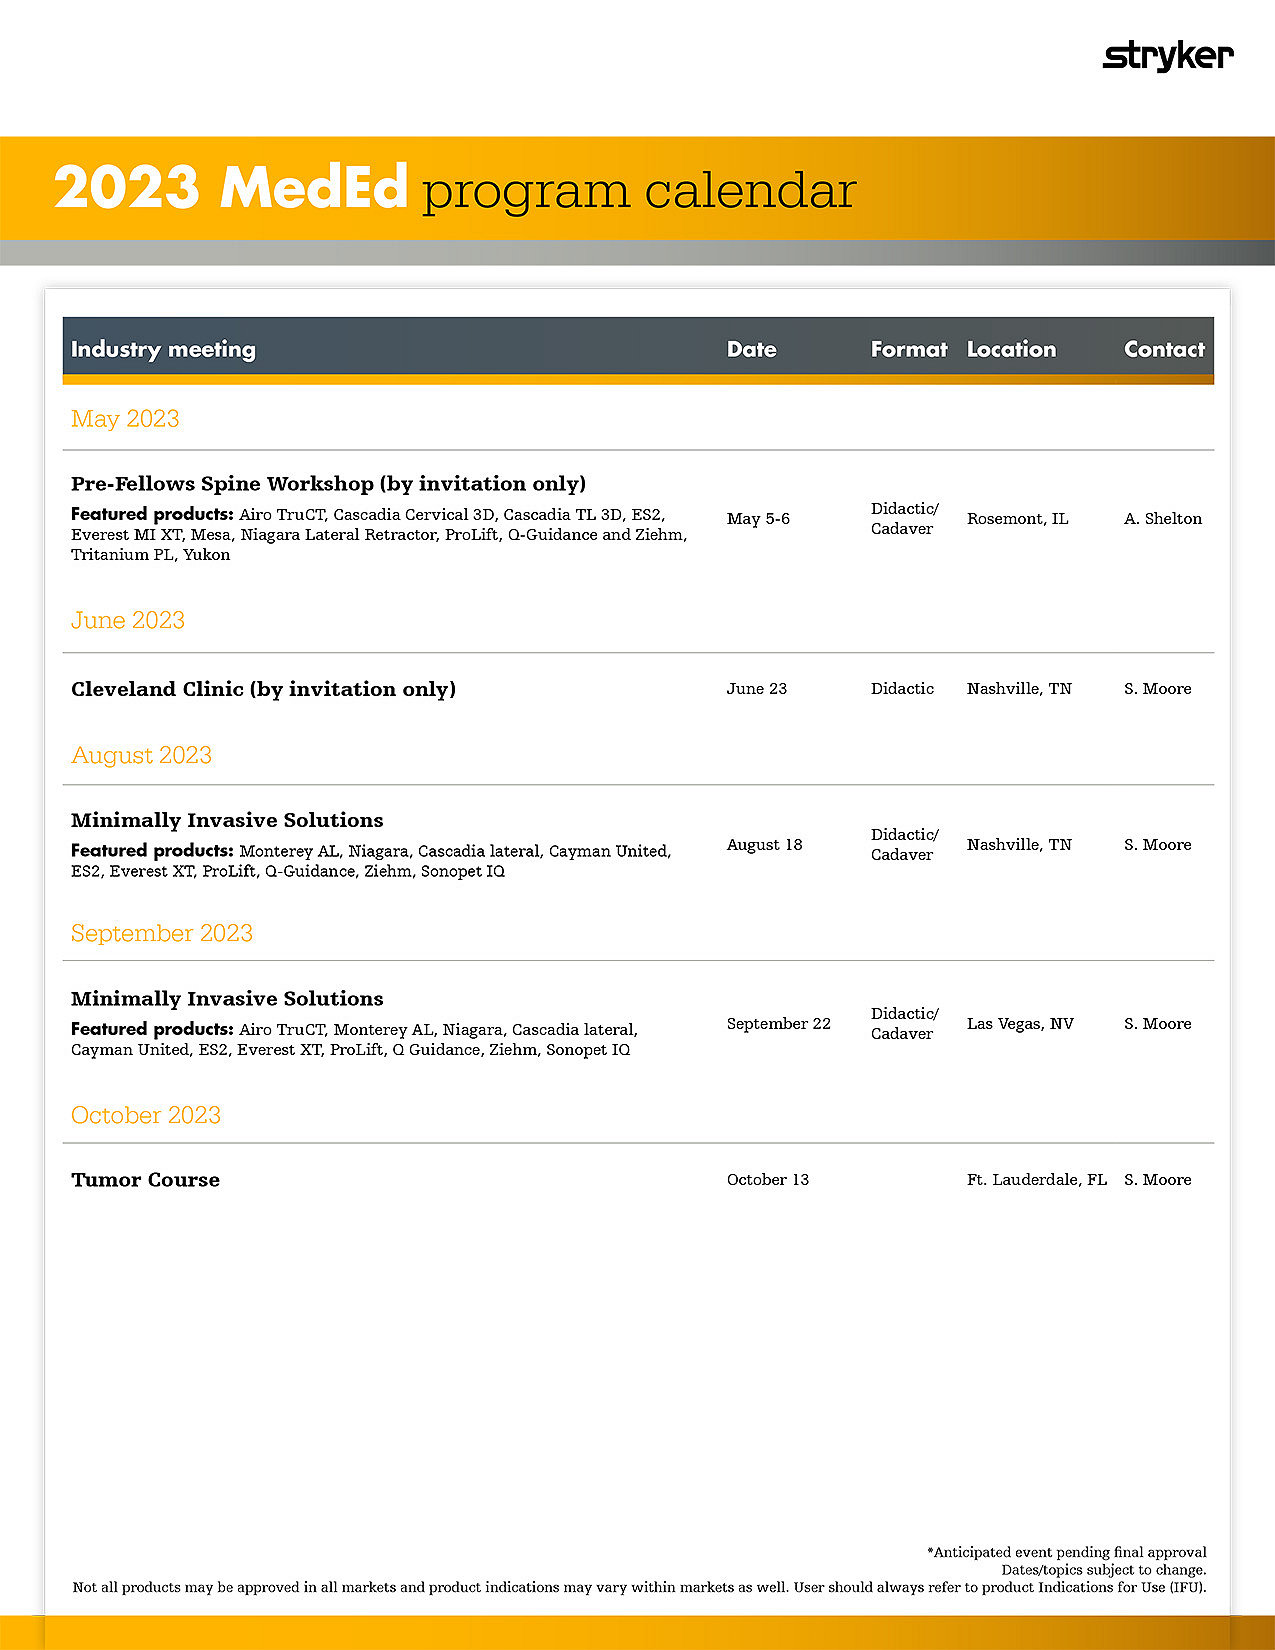 2023 MedEd Program Calendar